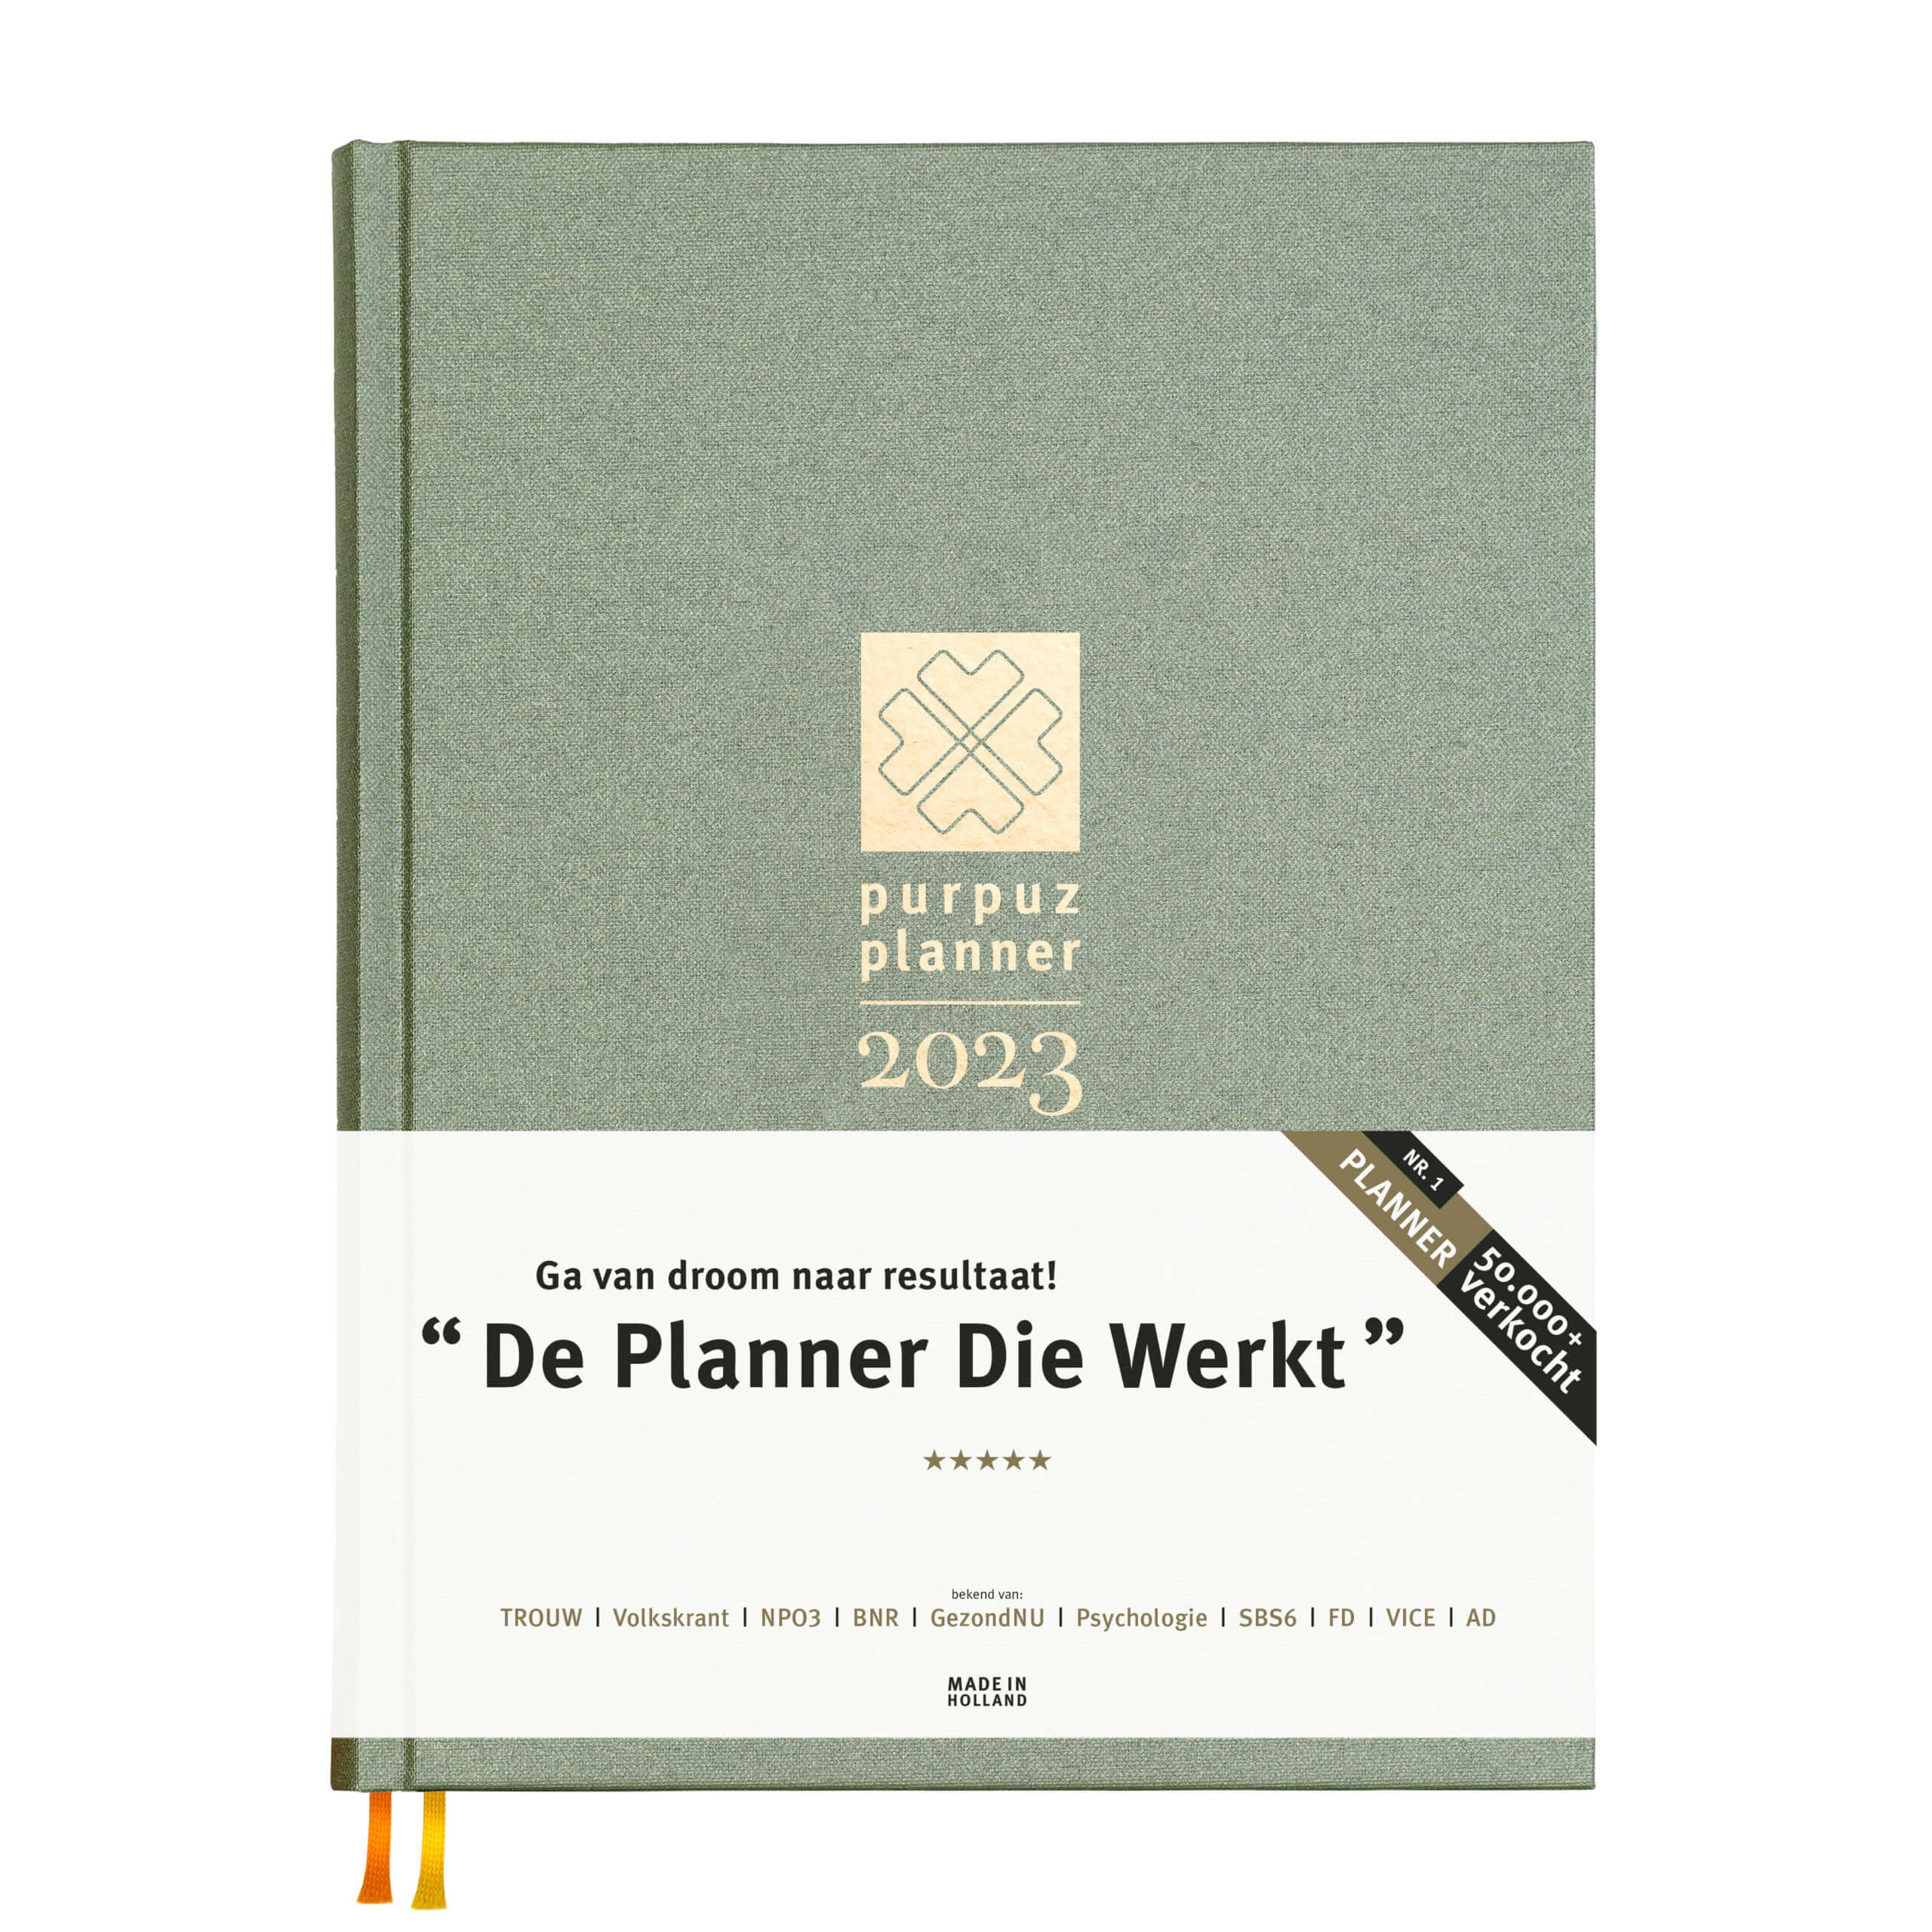 Purpuz Planner 2023 green